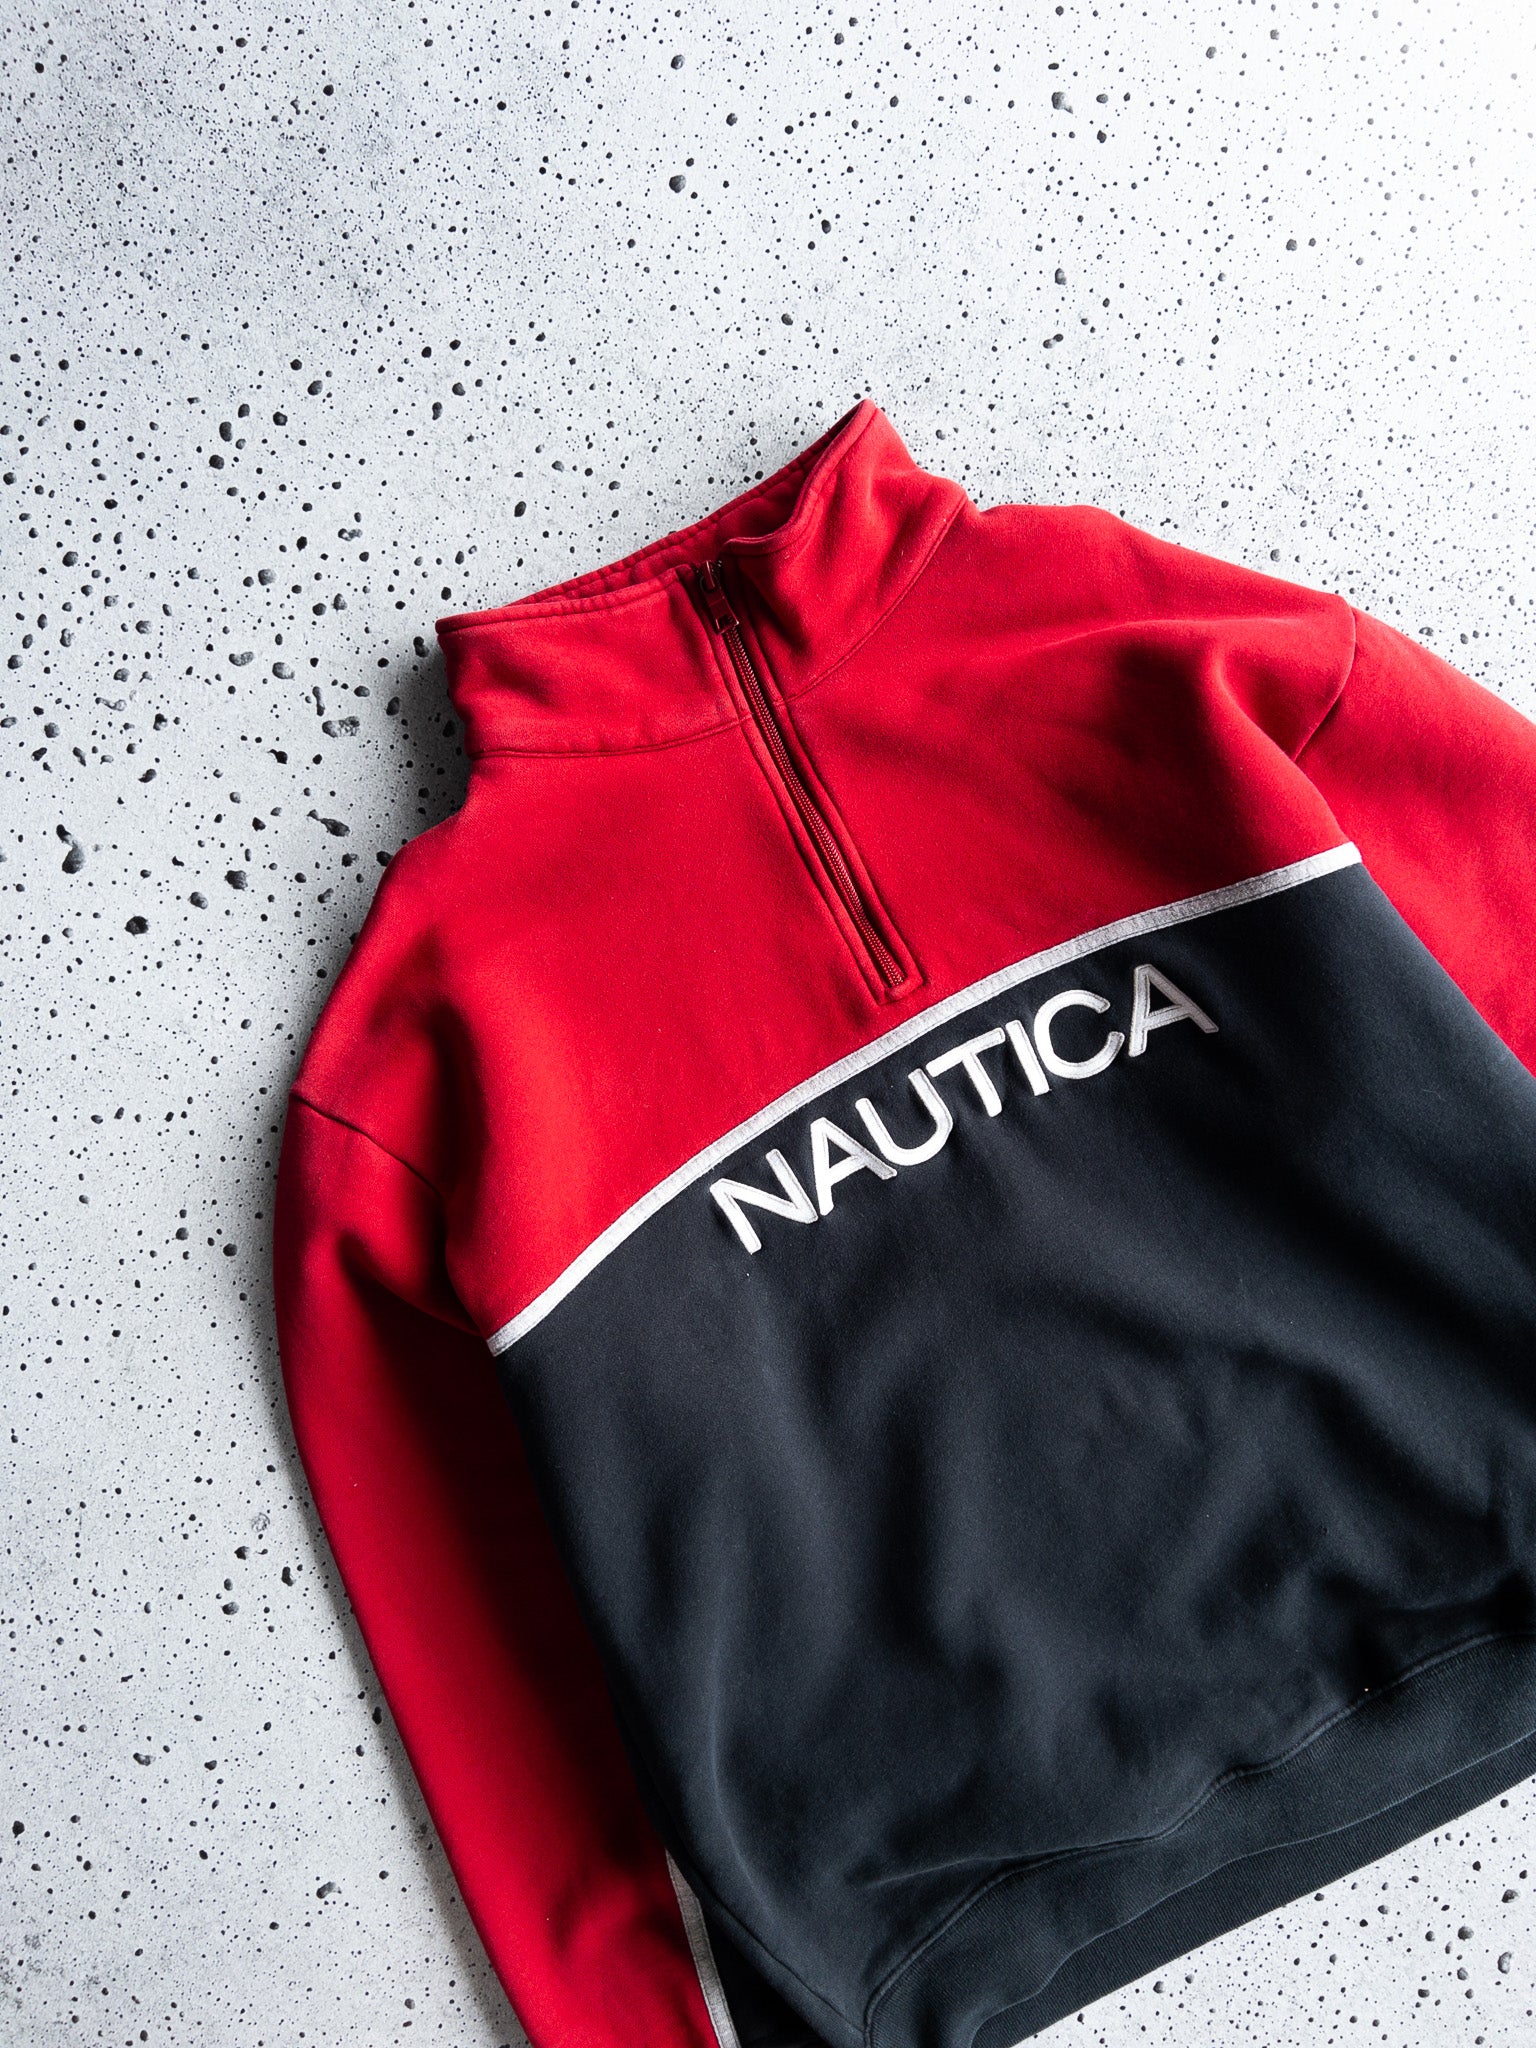 Vintage Nautica Quarter Zip Sweatshirt (XL)